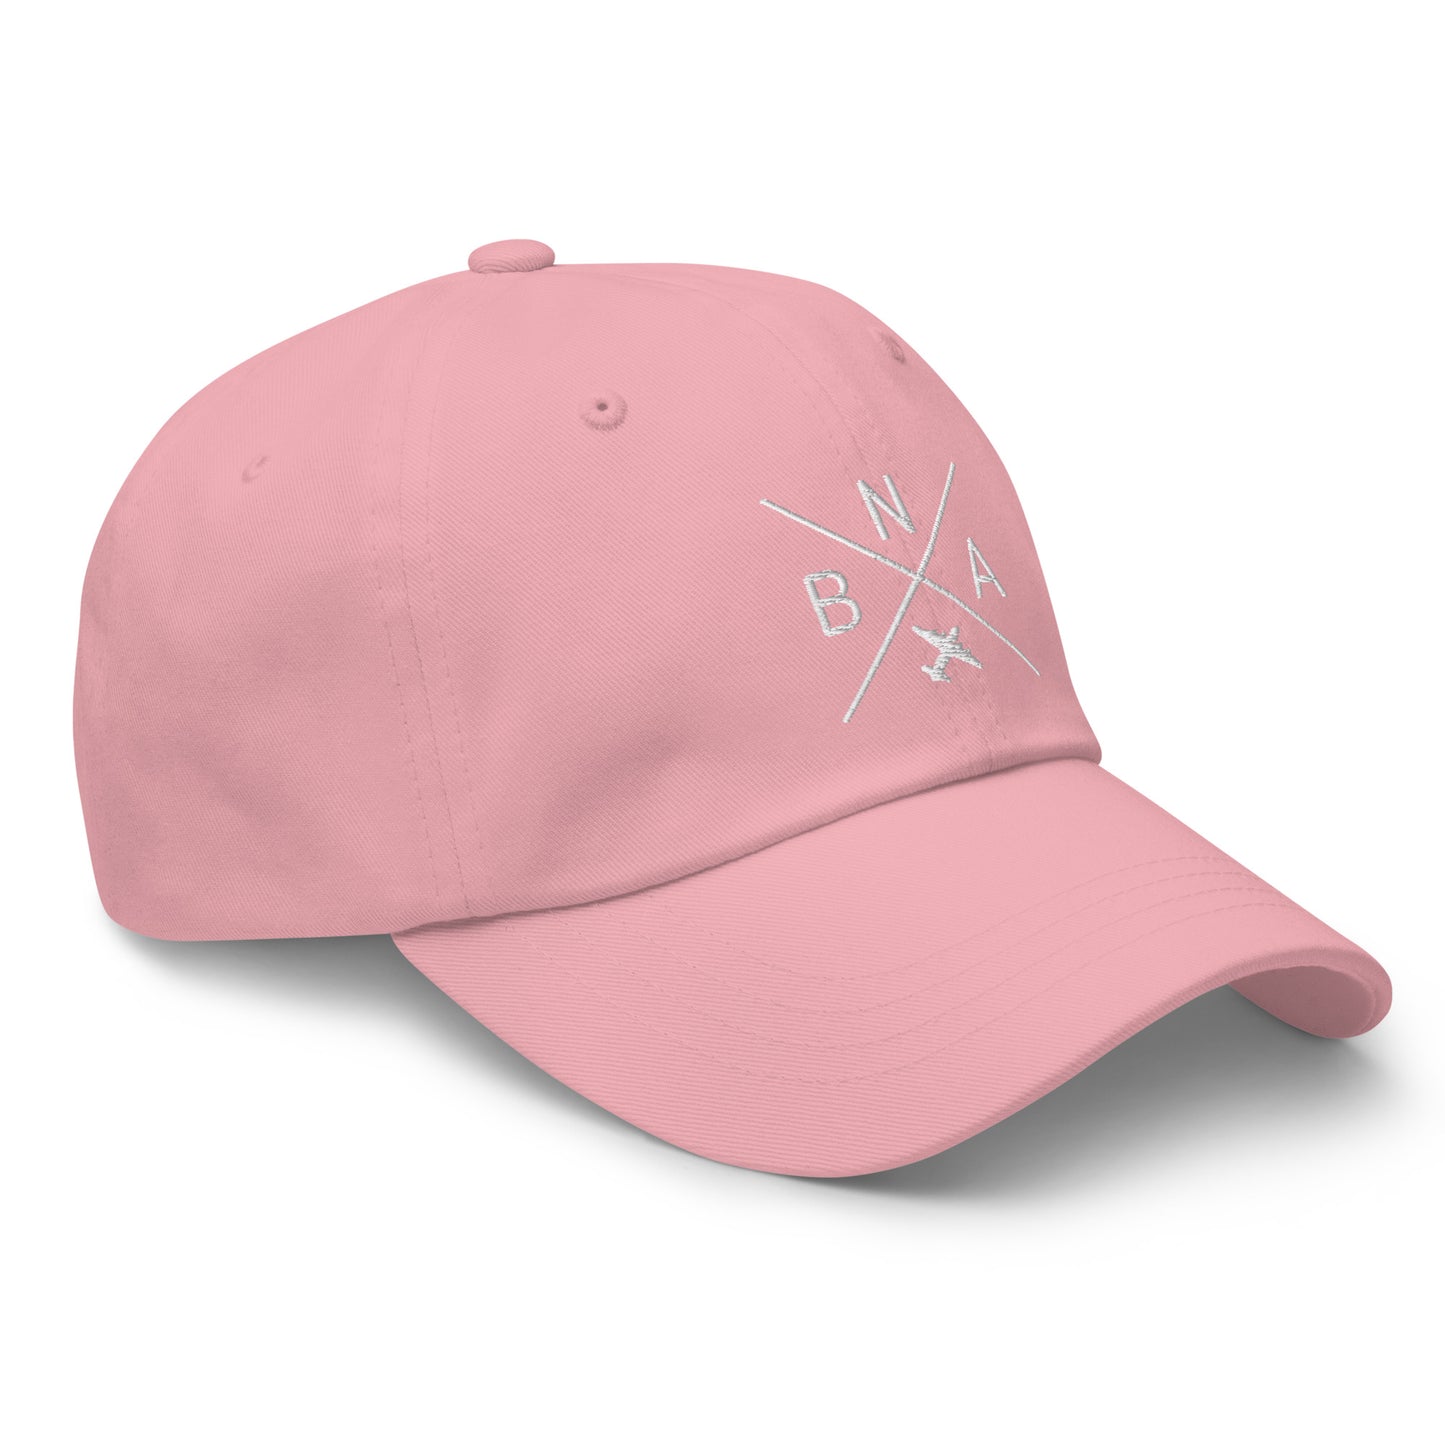 Crossed-X Dad Hat - White • BNA Nashville • YHM Designs - Image 26